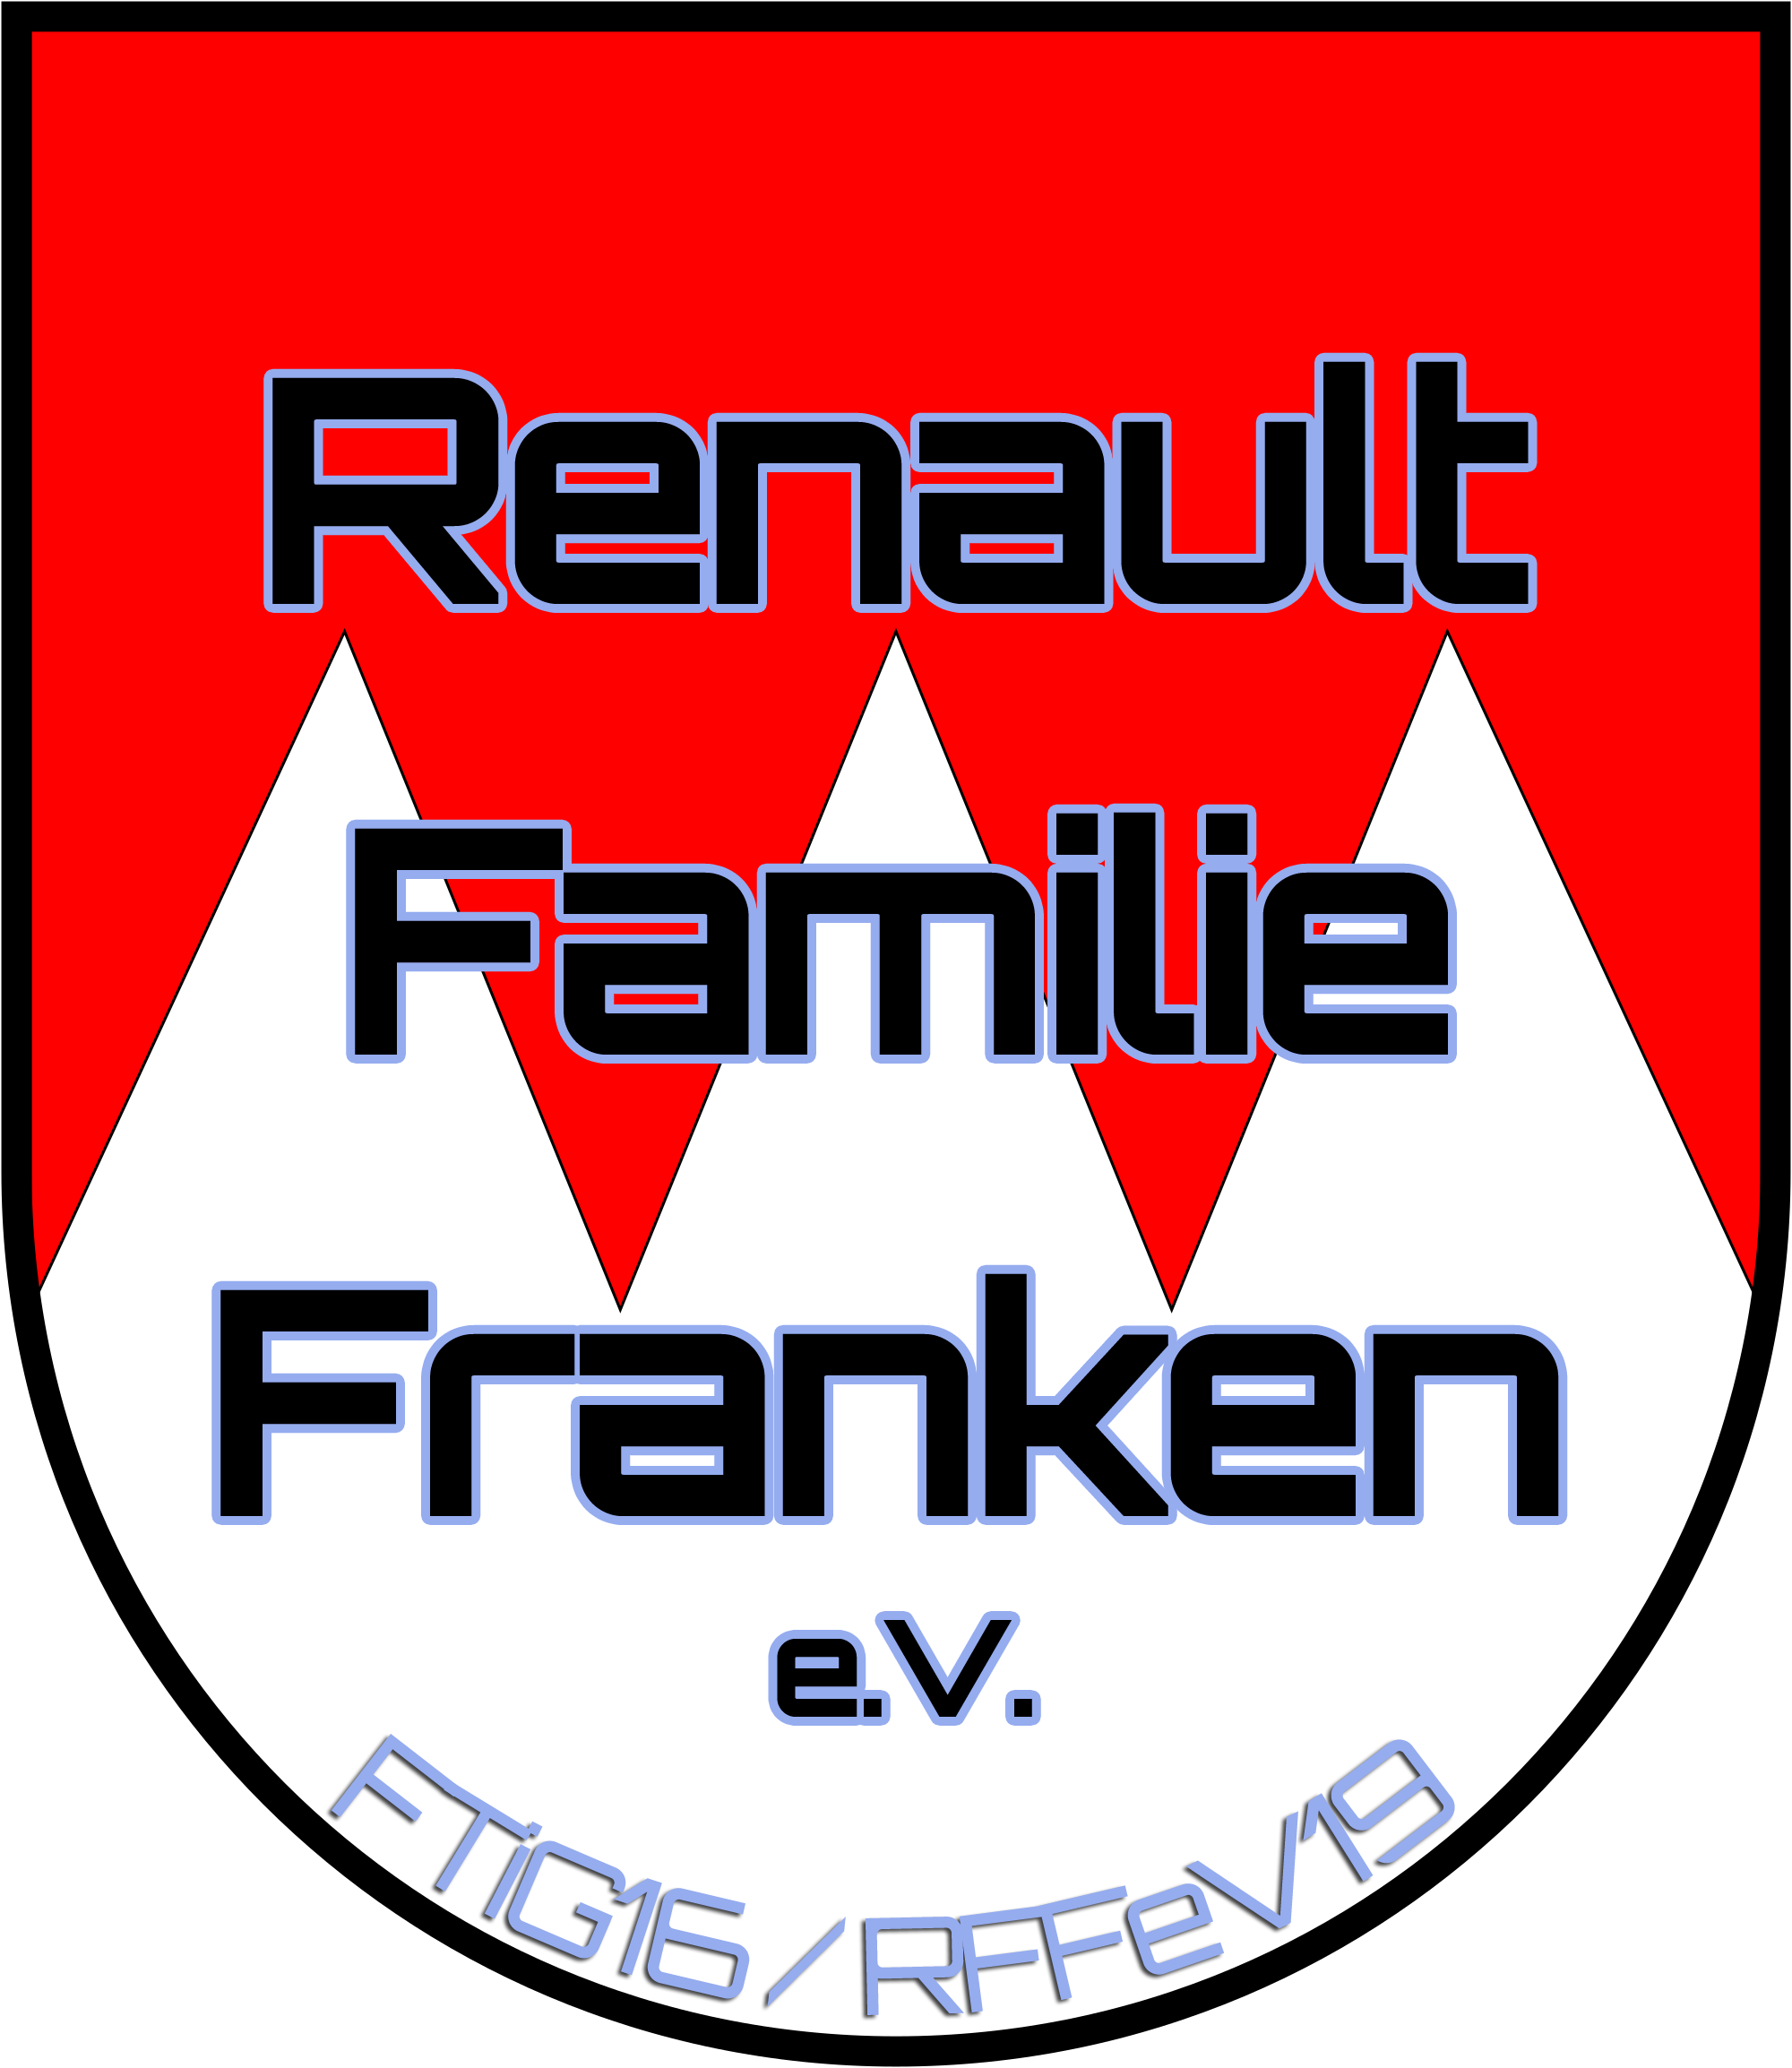 Renault Familie Franken e.V. 